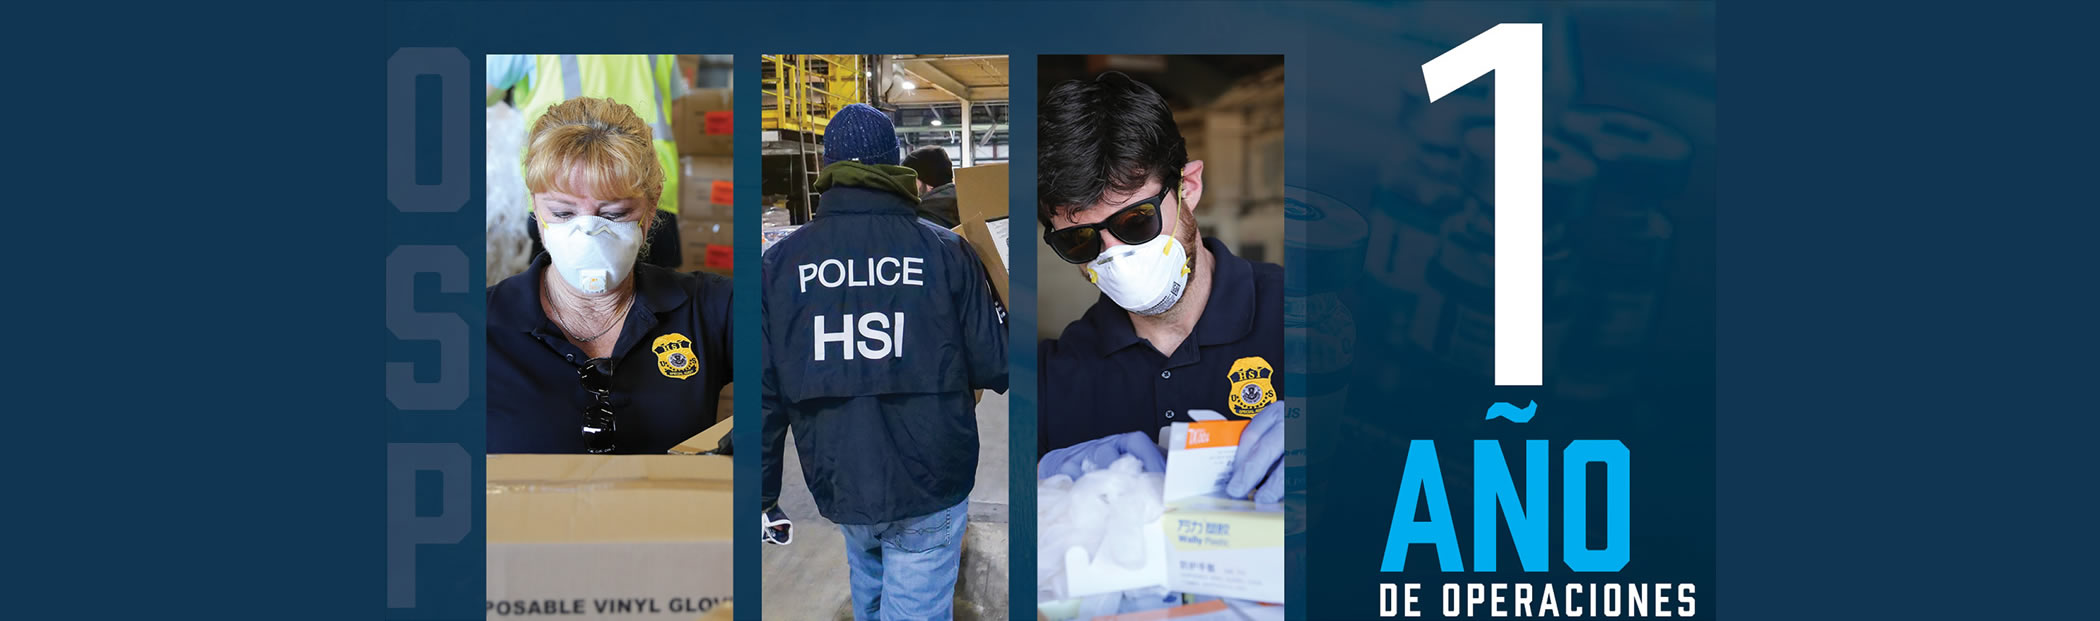 ICE HSI marca el aniversario de Operación Promesa Robada con $48M en ganancias fraudulentas, 21.2M respiradores falsificados incautados